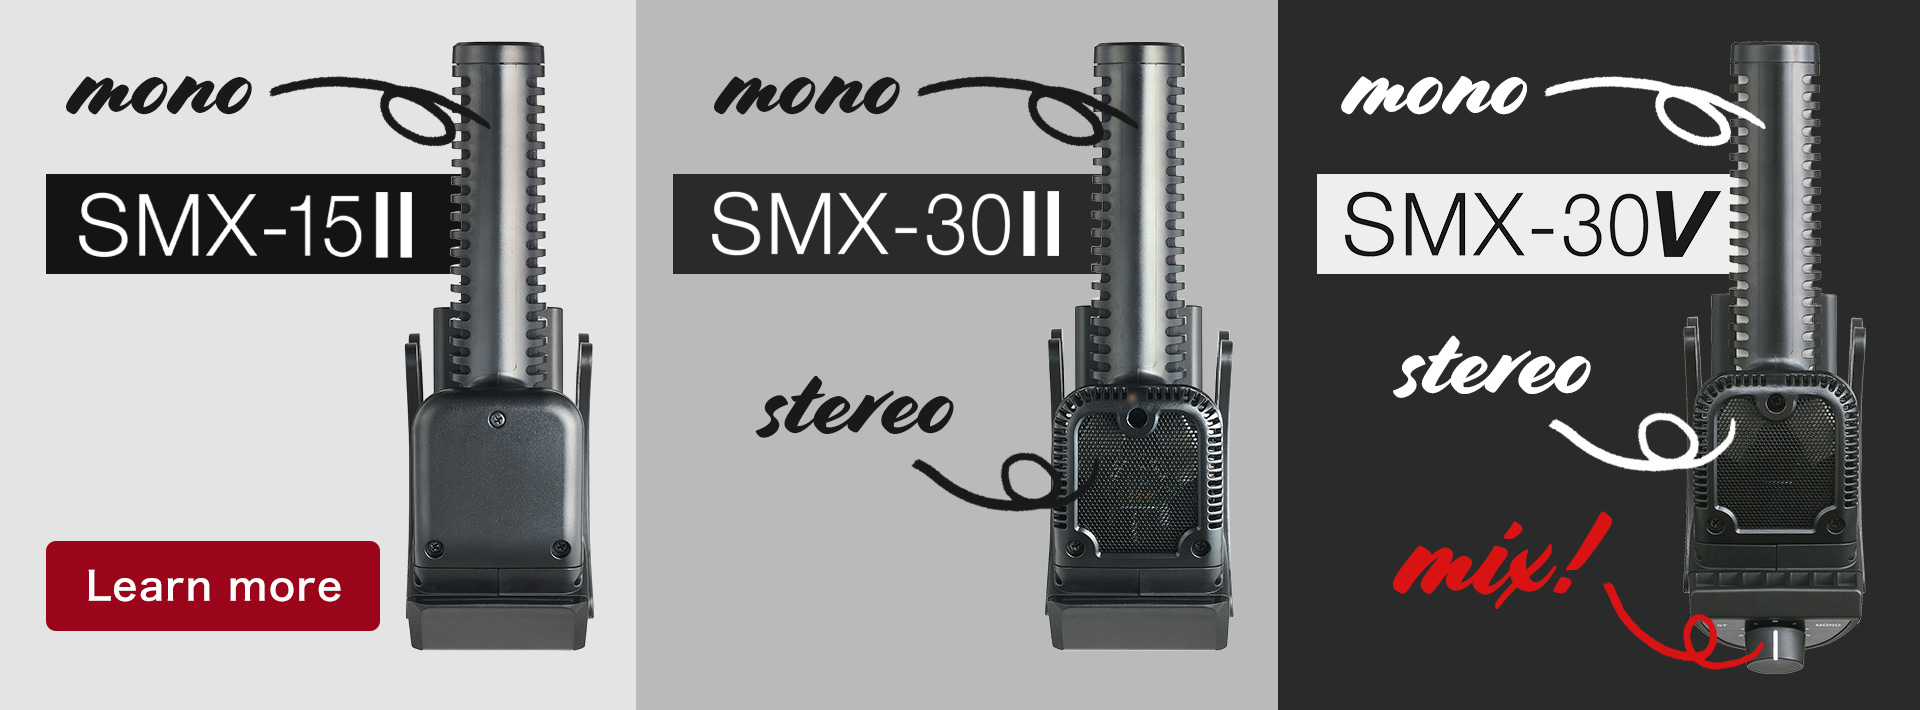 SMX-15II、SMX-30II、SMX-30V